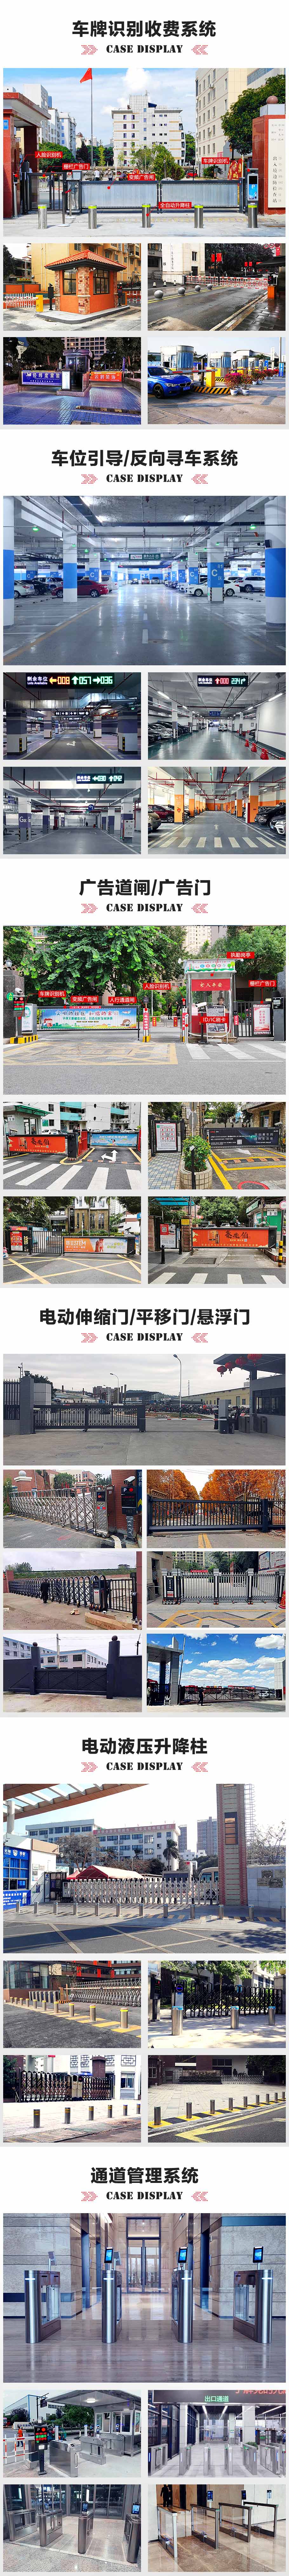 深圳香港中文大学智能停车场管理系统